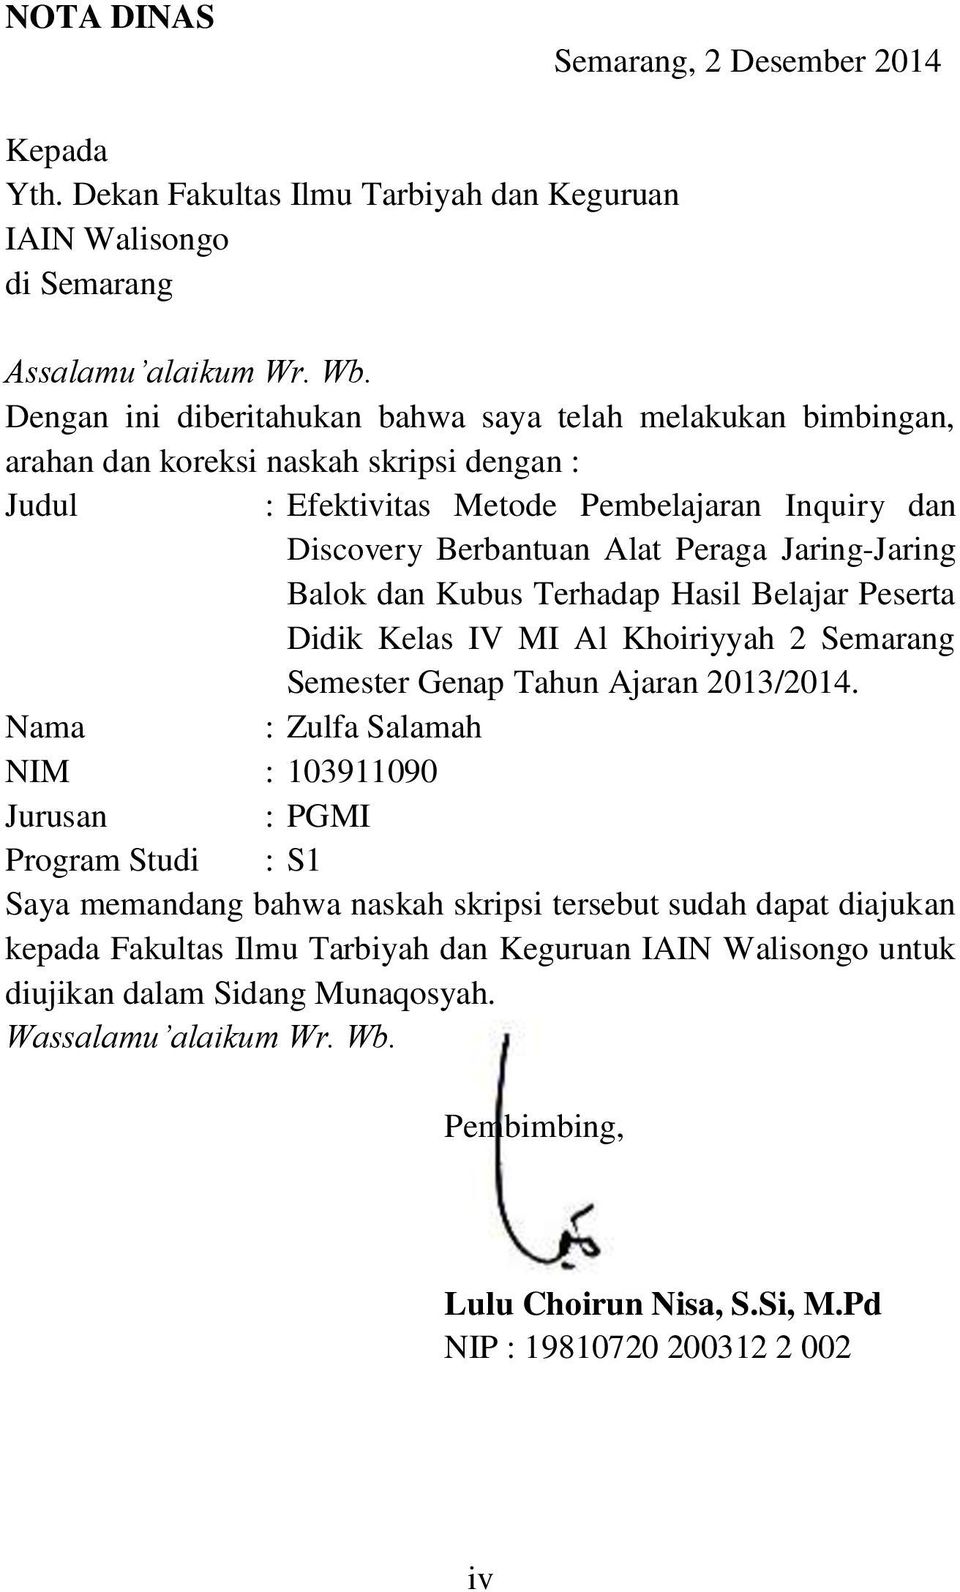 Jaring-Jaring Balok dan Kubus Terhadap Hasil Belajar Peserta Didik Kelas IV MI Al Khoiriyyah 2 Semarang Semester Genap Tahun Ajaran 2013/2014.